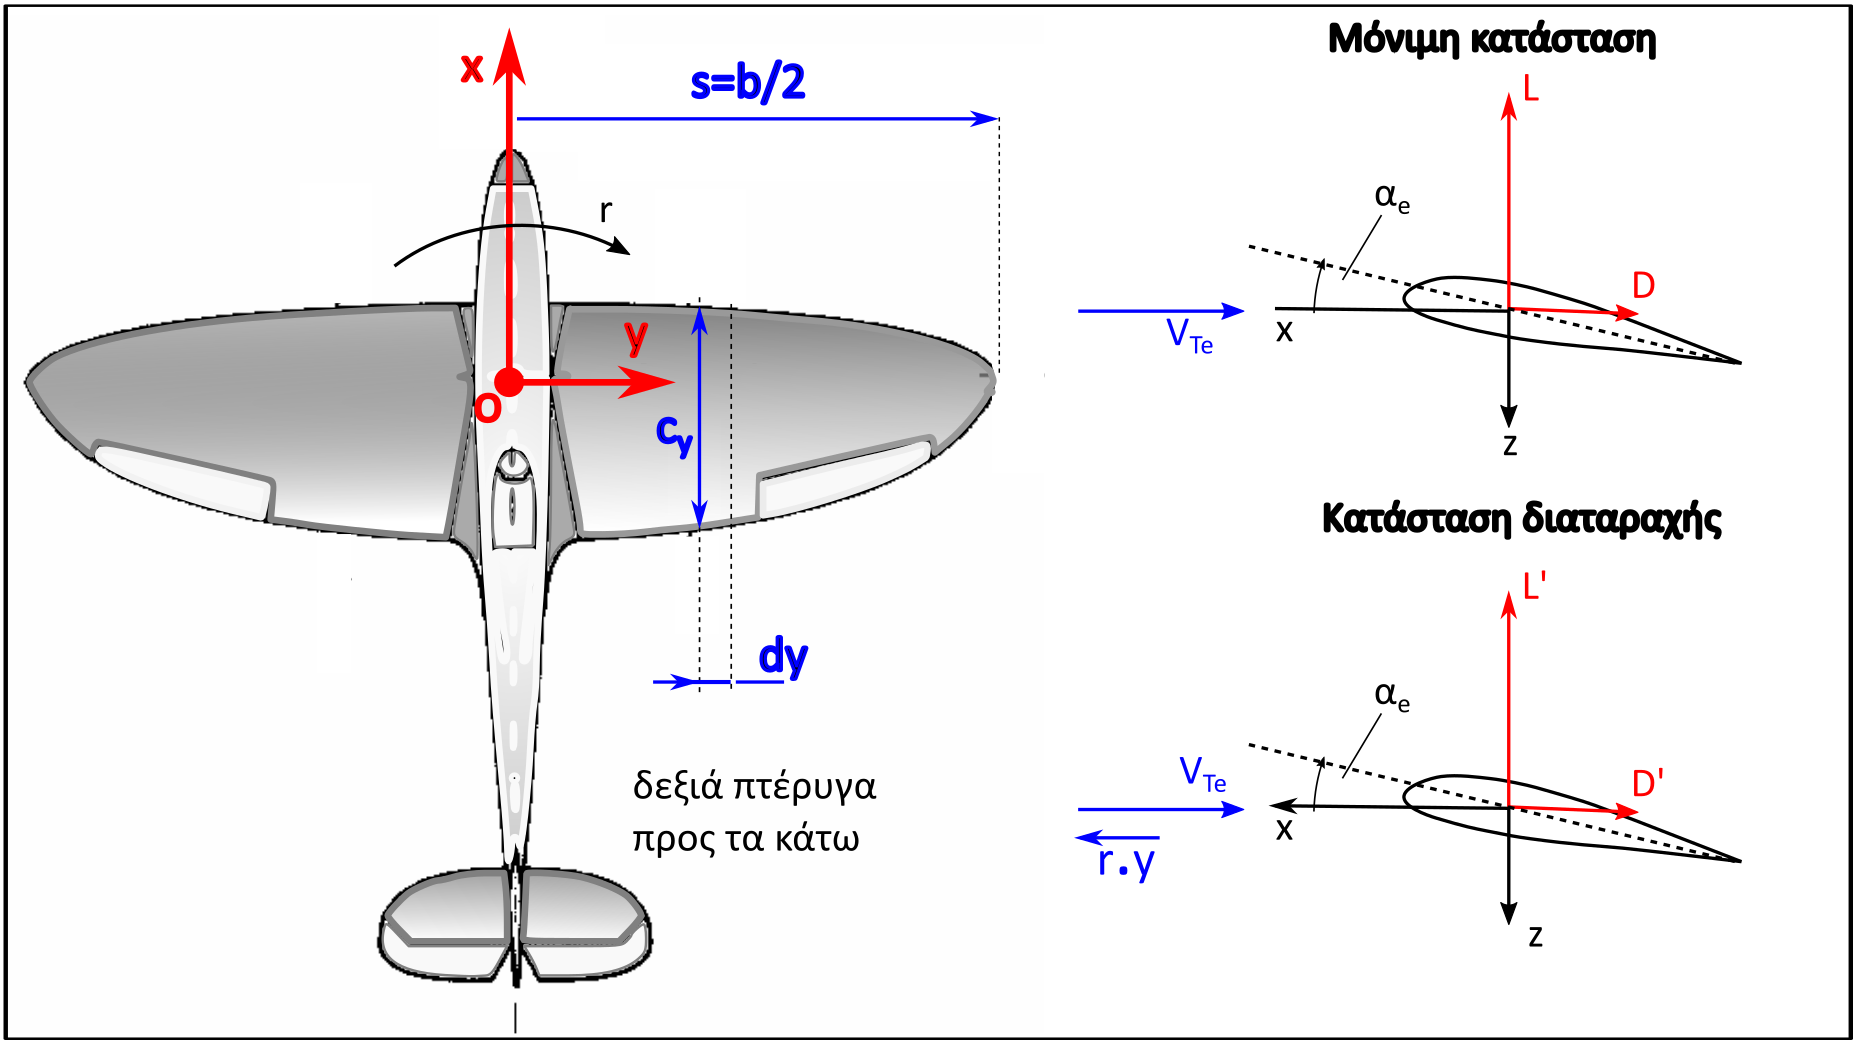 Η εικόνα δεν εμφανίζεται/Image is not displayed - Γεωμετρία και λωρίδες υπολογισμού άνωσης στην κύρια πτέρυγα λόγω εκτροπής / wing lift, yawing aircraft